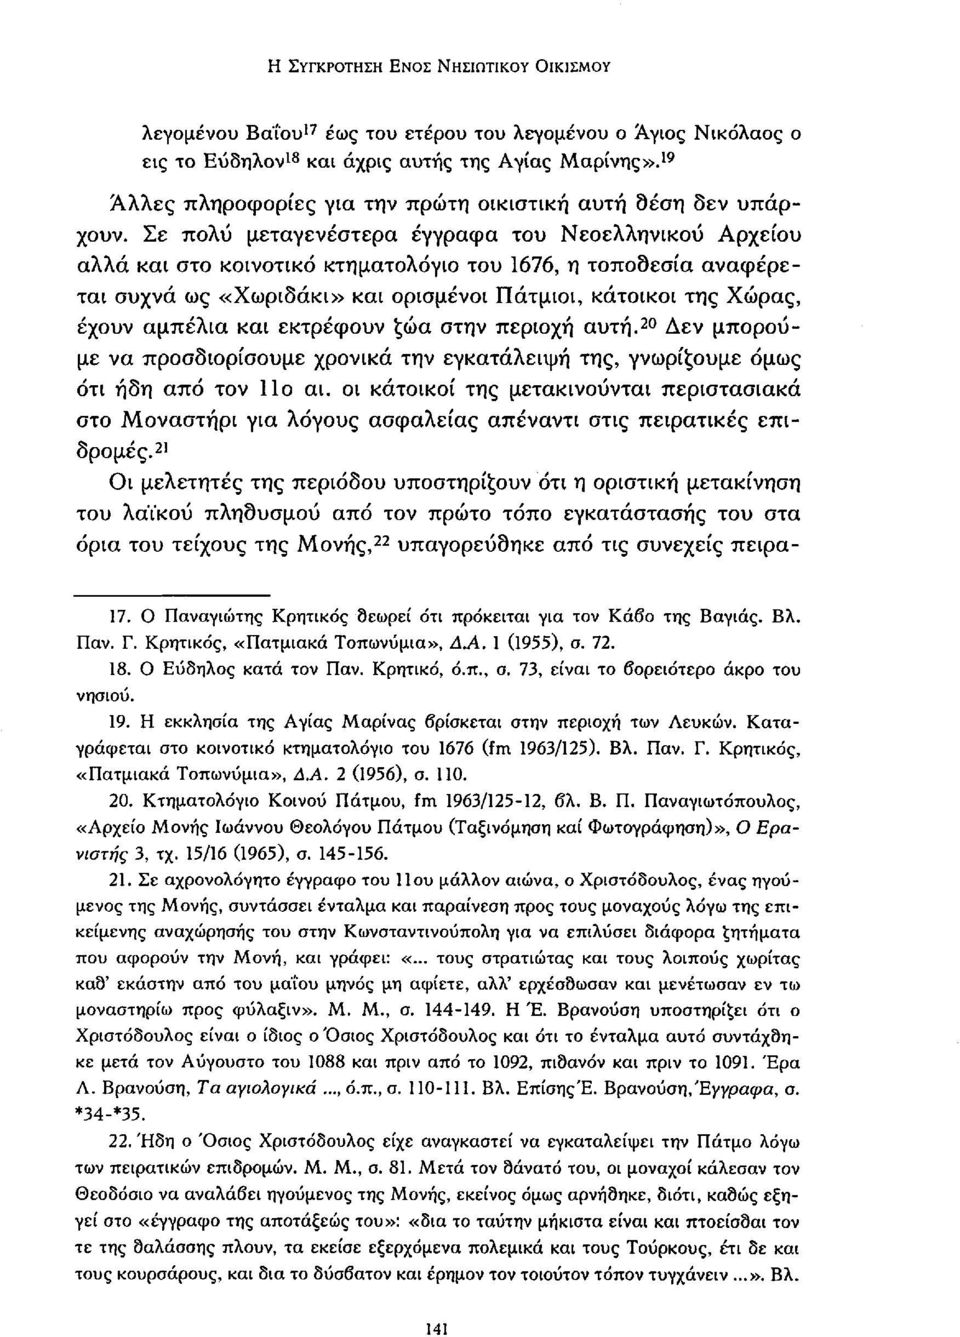 Σε πολύ μεταγενέστερα έγγραφα του Νεοελληνικού Αρχείου αλλά και στο κοινοτικό κτηματολόγιο του 1676, η τοποσεσία αναφέρεται συχνά ως «Χωριδάκι» και ορισμένοι Πάτμιοι, κάτοικοι της Χώρας, έχουν